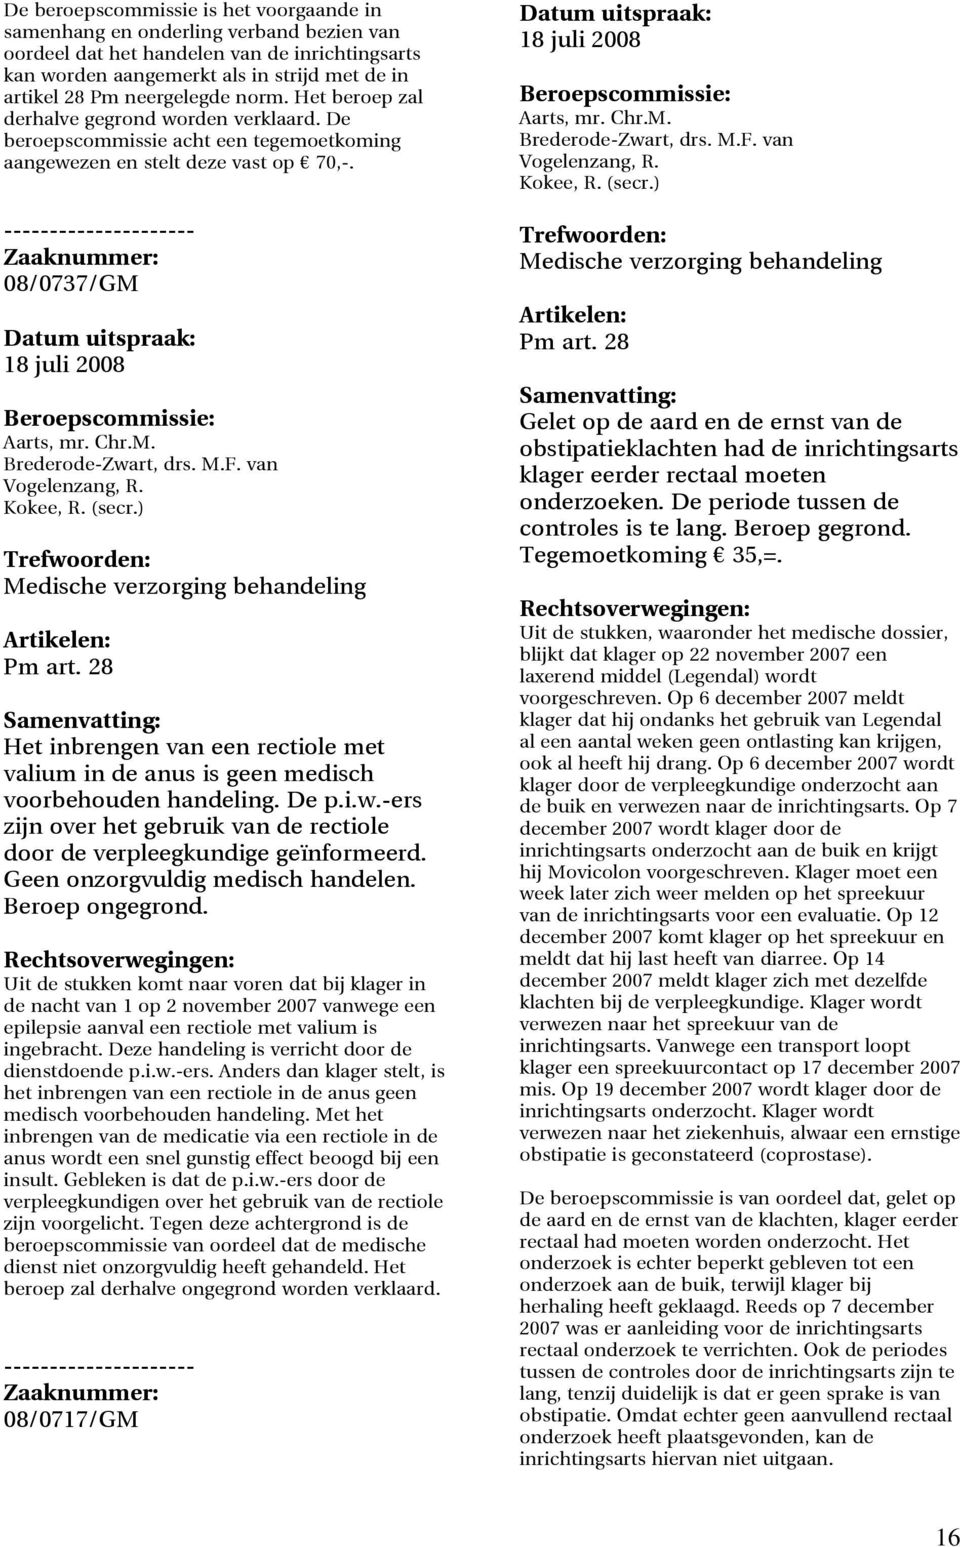 M.F. van Vogelenzang, R. Kokee, R. (secr.) Medische verzorging behandeling Pm art. 28 Het inbrengen van een rectiole met valium in de anus is geen medisch voorbehouden handeling. De p.i.w.